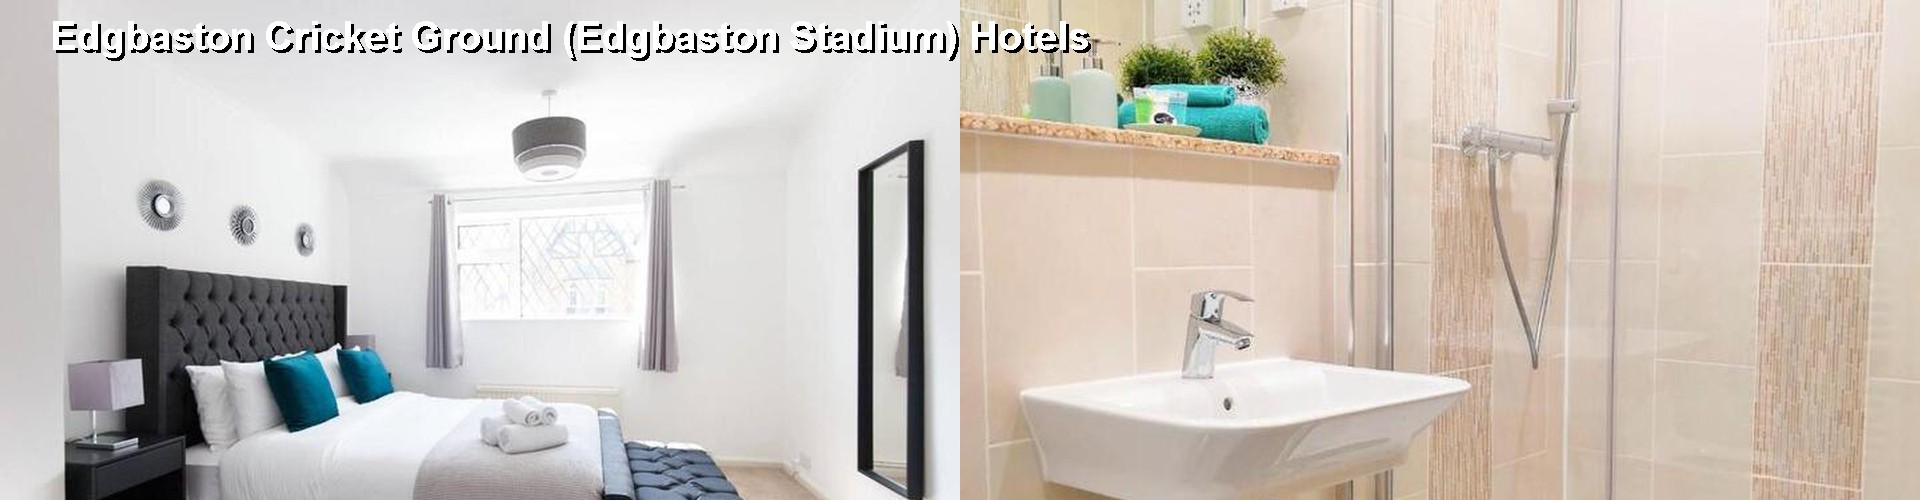 5 Best Hotels near Edgbaston Cricket Ground (Edgbaston Stadium)